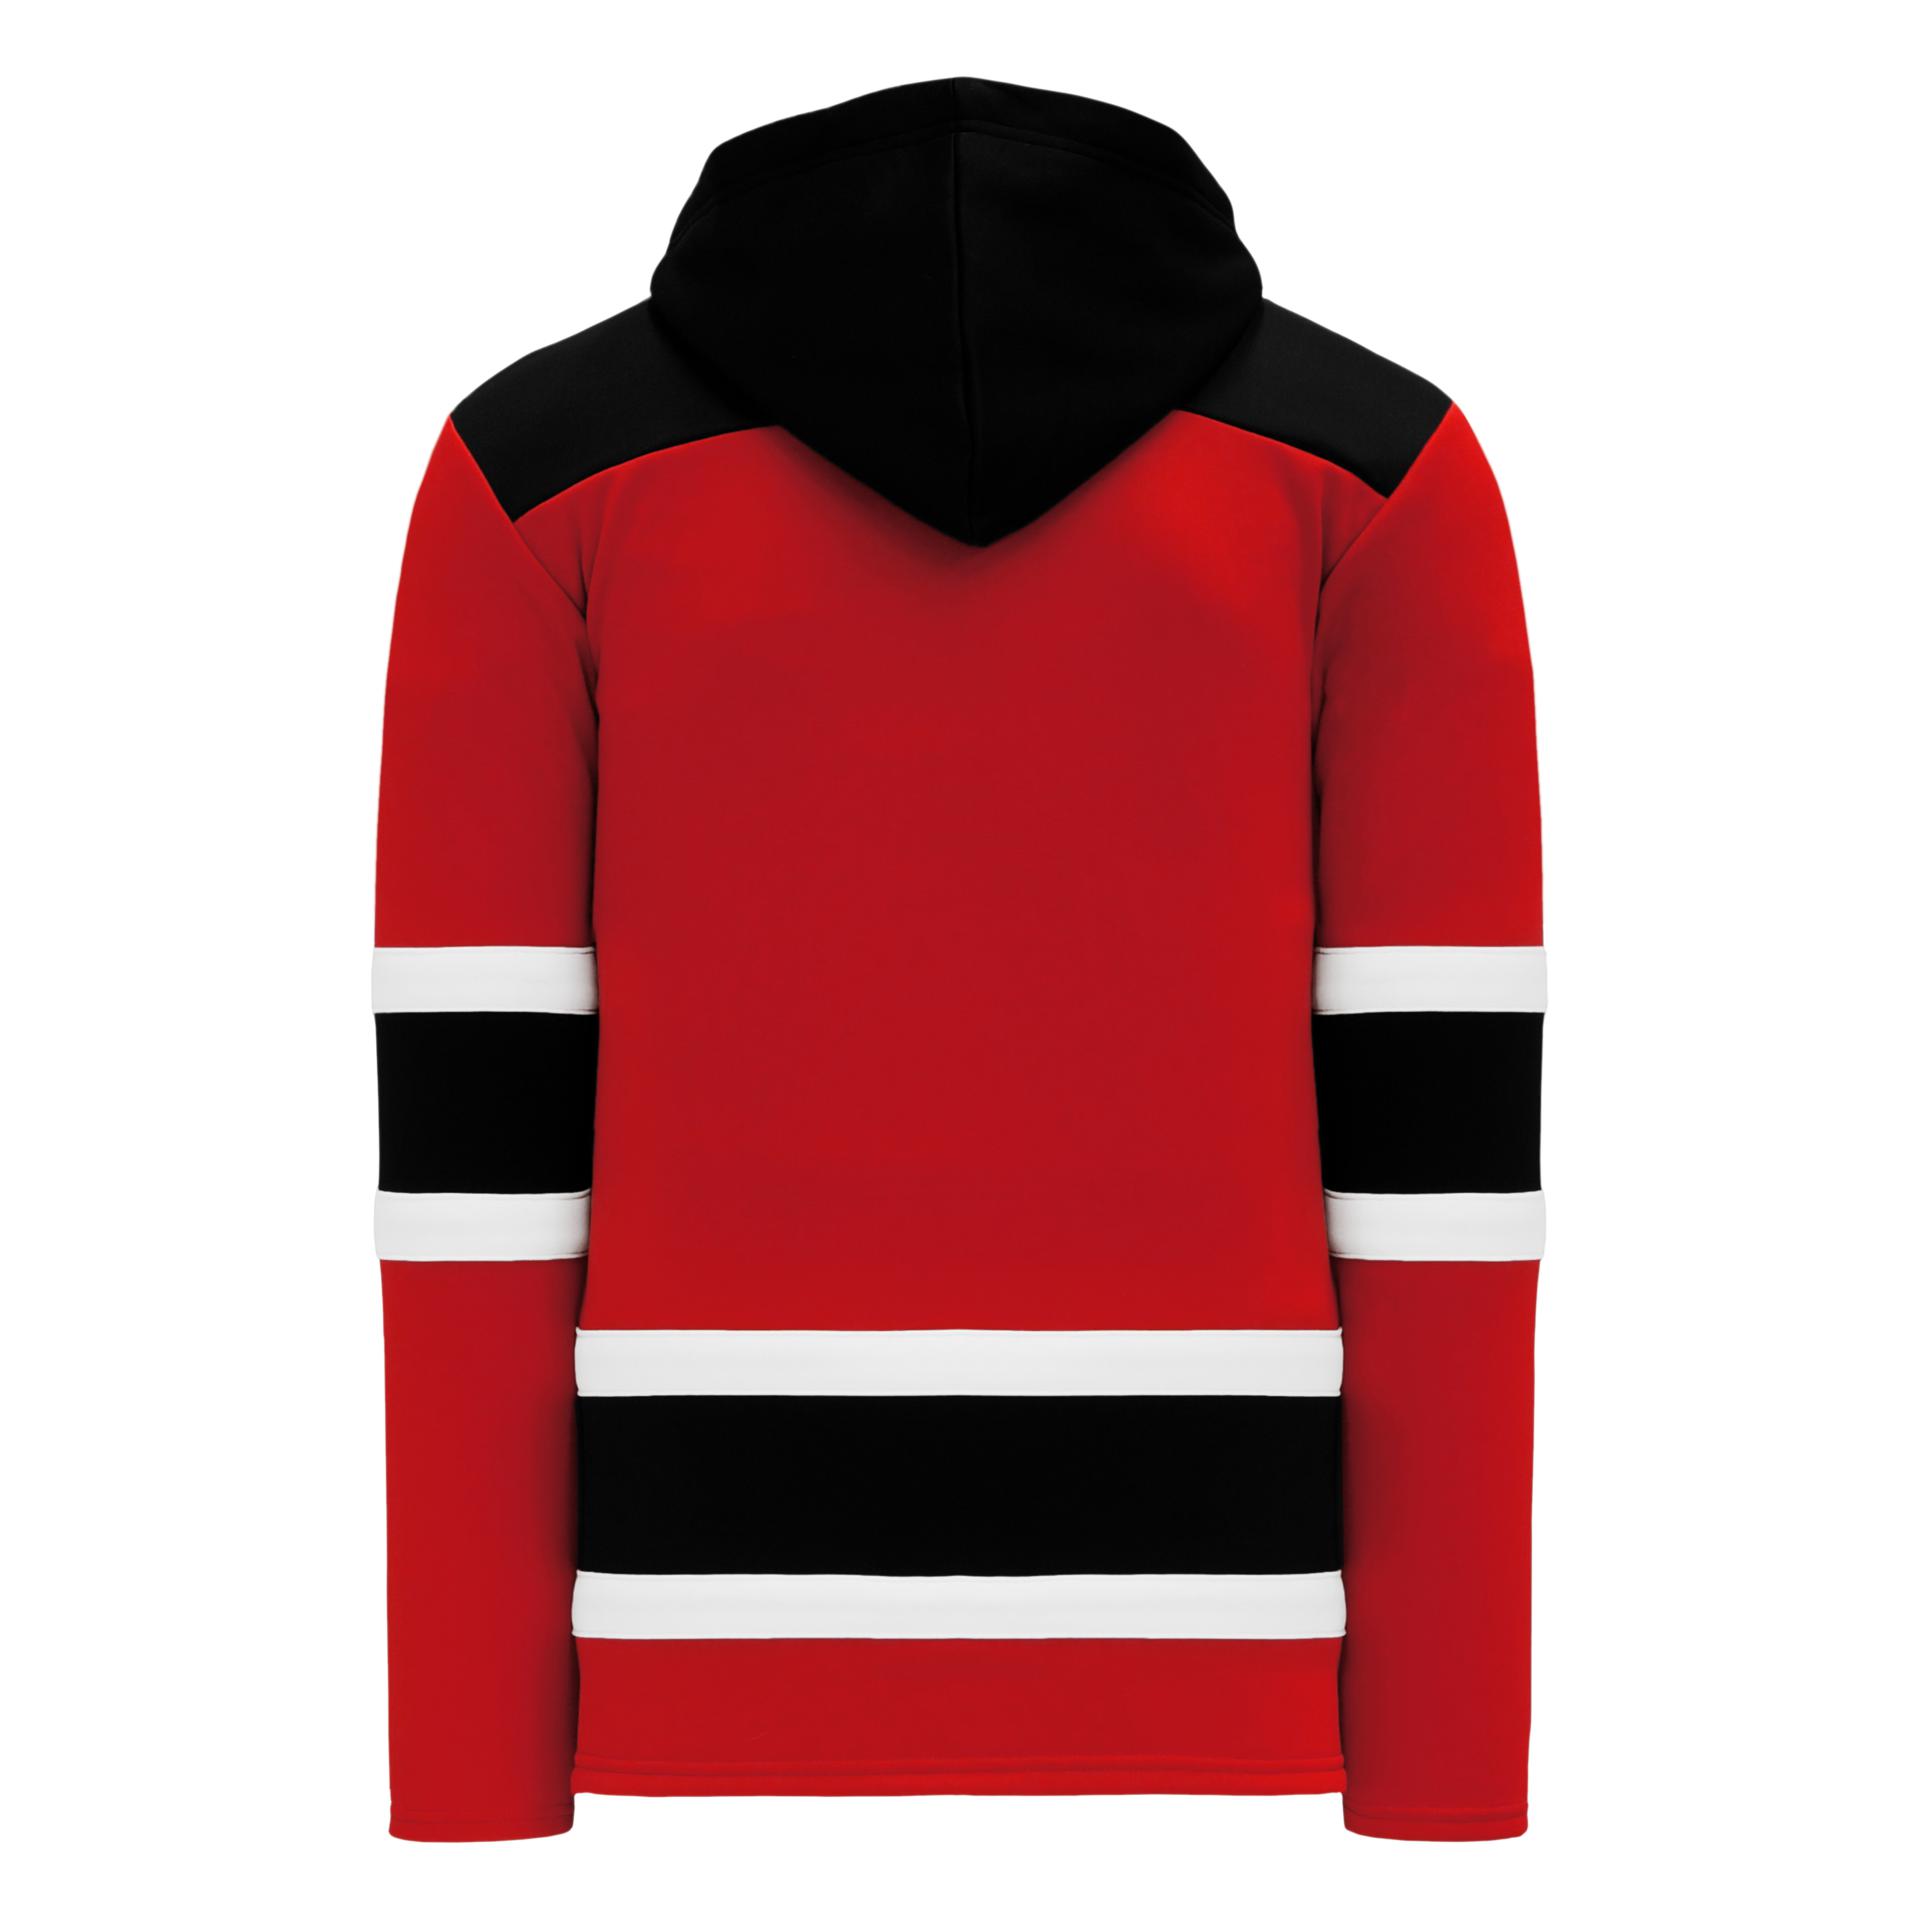 A1845-941 Los Angeles Kings Blank Hockey Lace Hoodie Sweatshirt